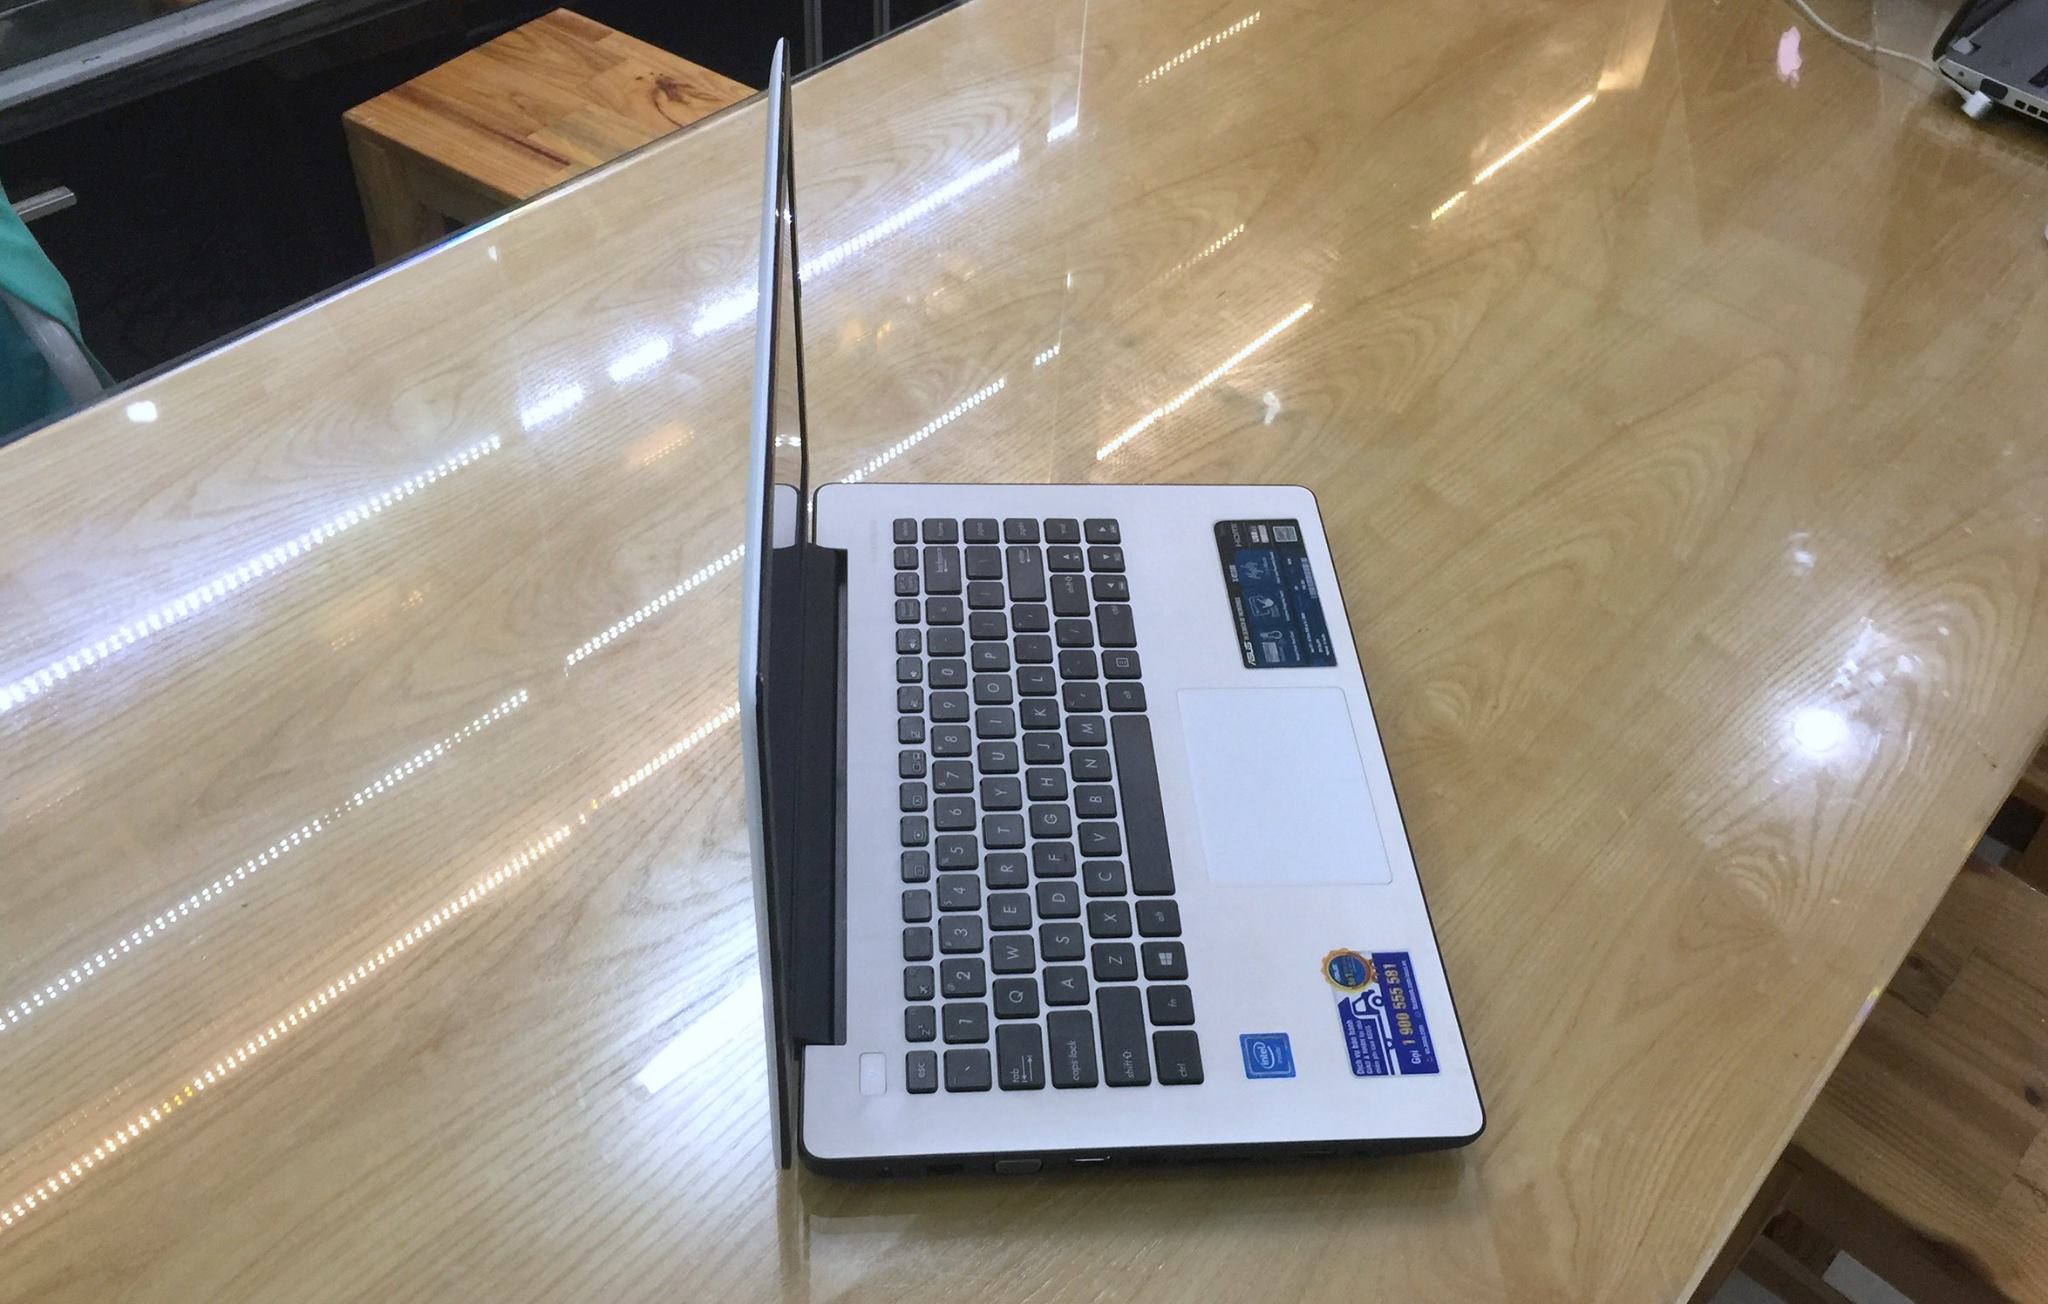 Laptop Asus X453 -1.jpg